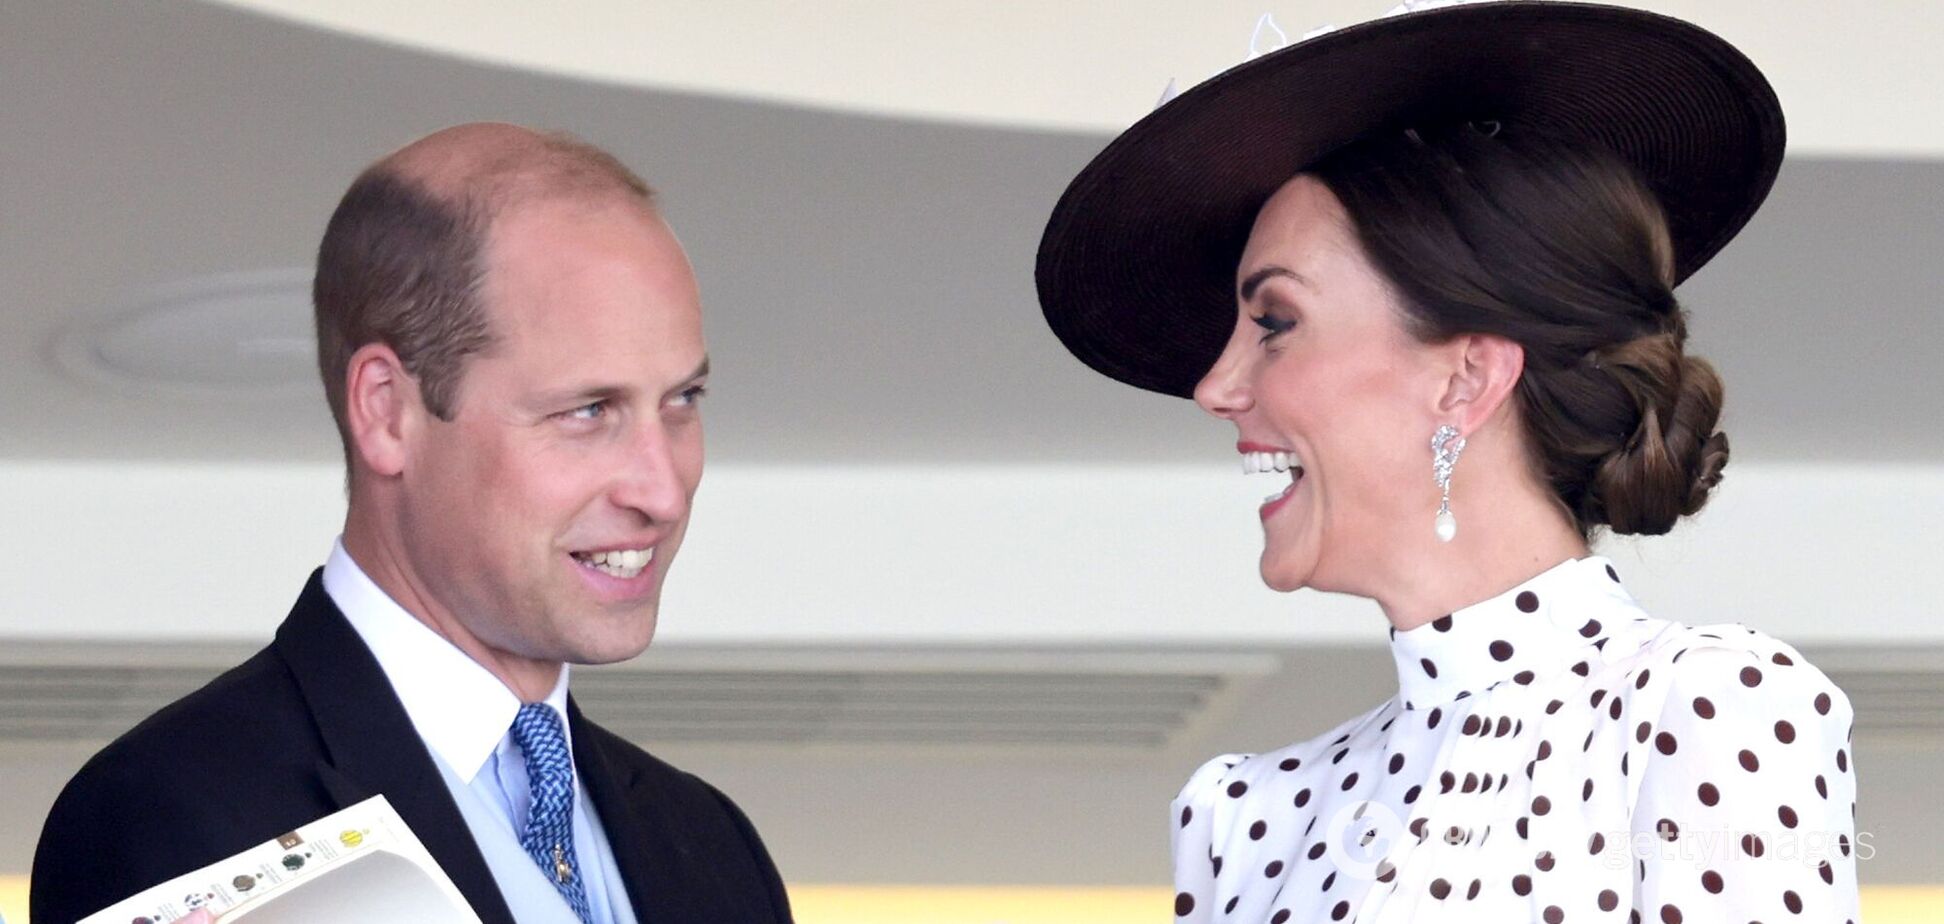 Фотографы поймали редкий момент, как Кейт Миддлтон и принц Уильям флиртуют на публике